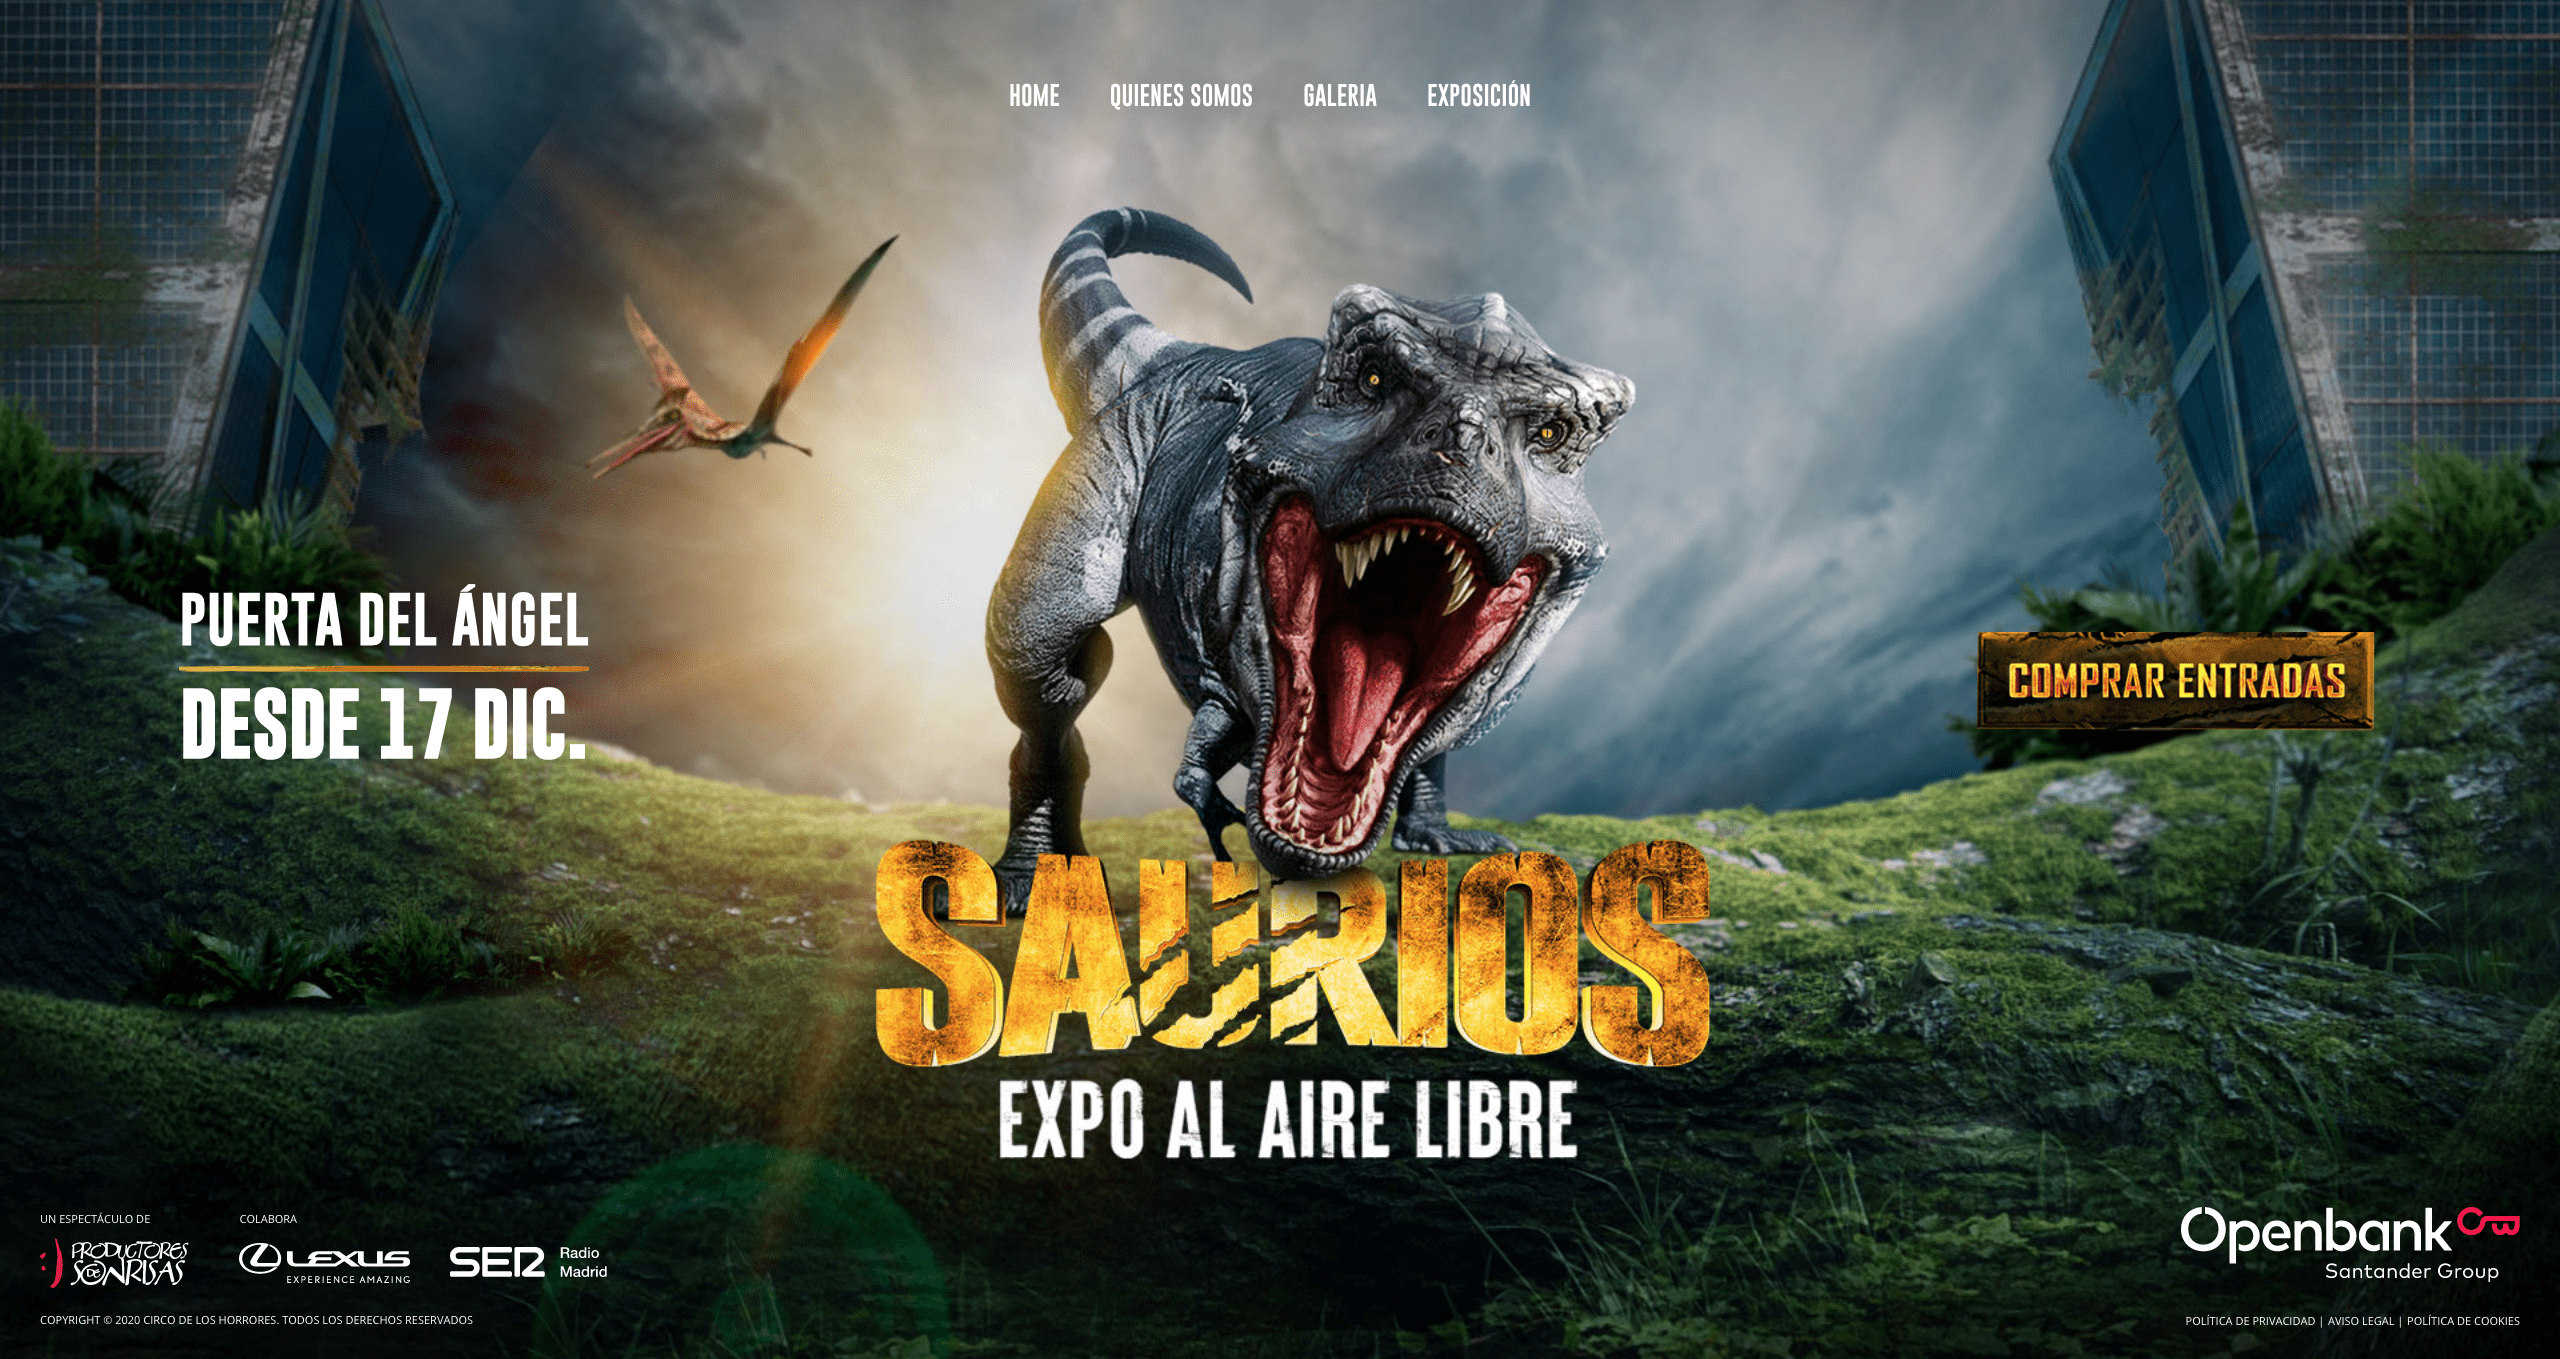 SAURIOS EXPO, en la Puerta del Ángel - Madrid Es Teatro